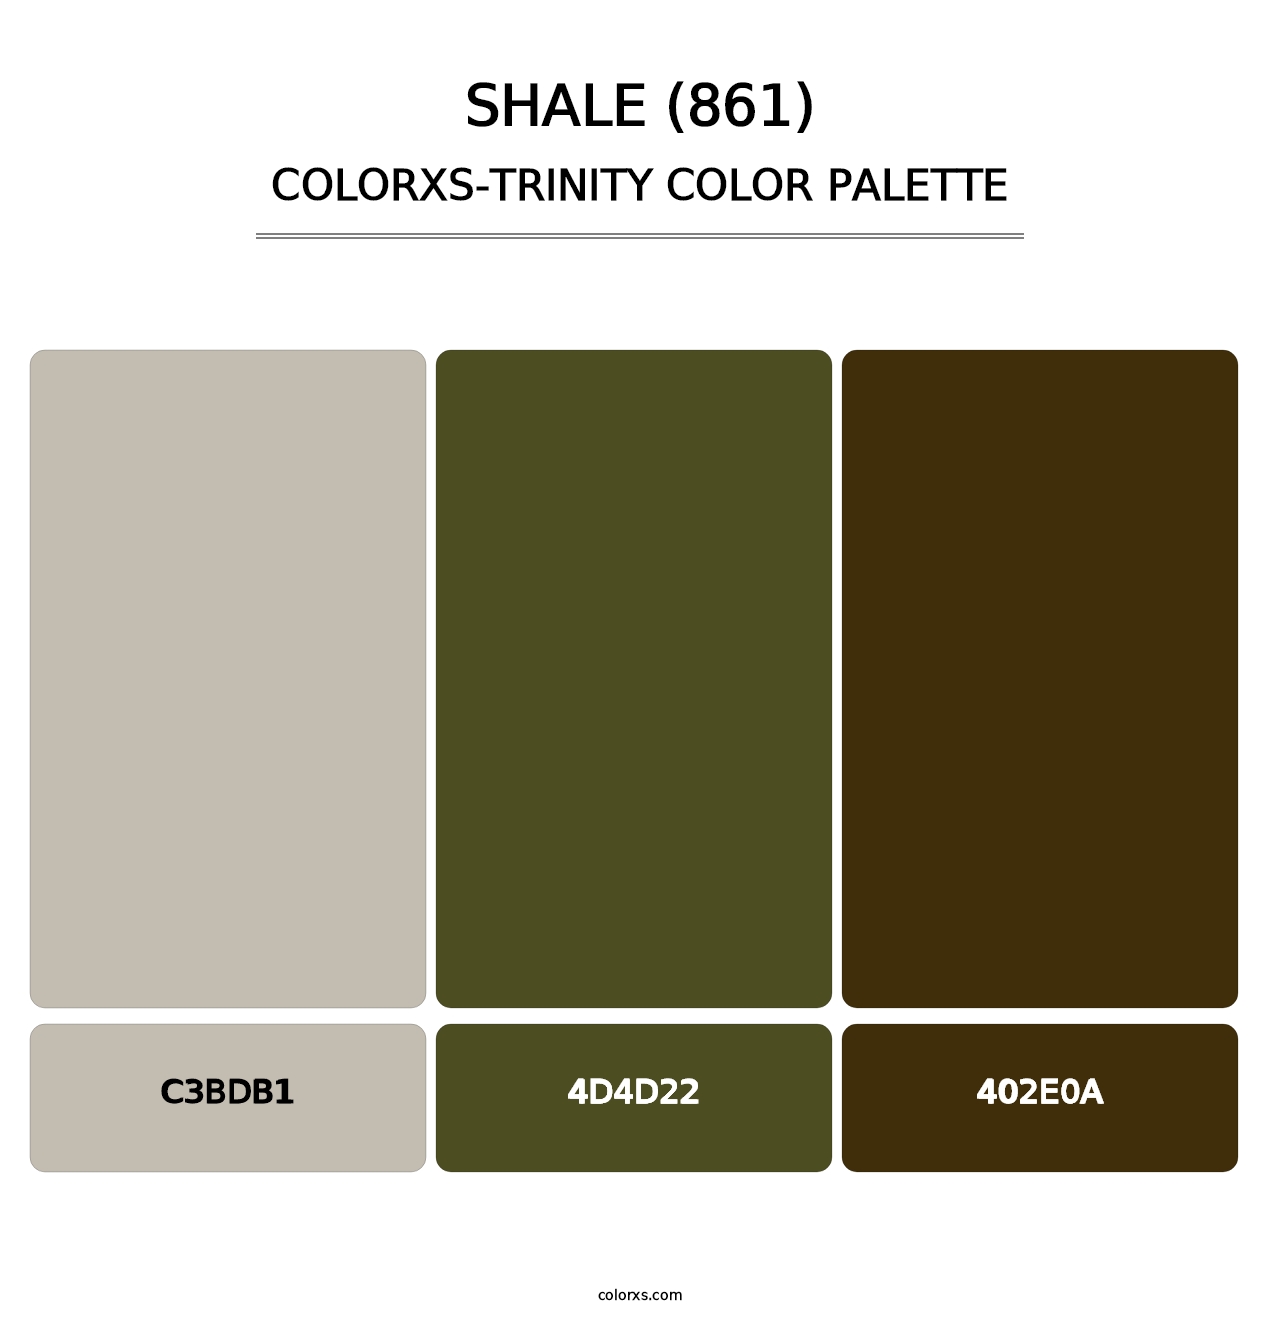 Shale (861) - Colorxs Trinity Palette